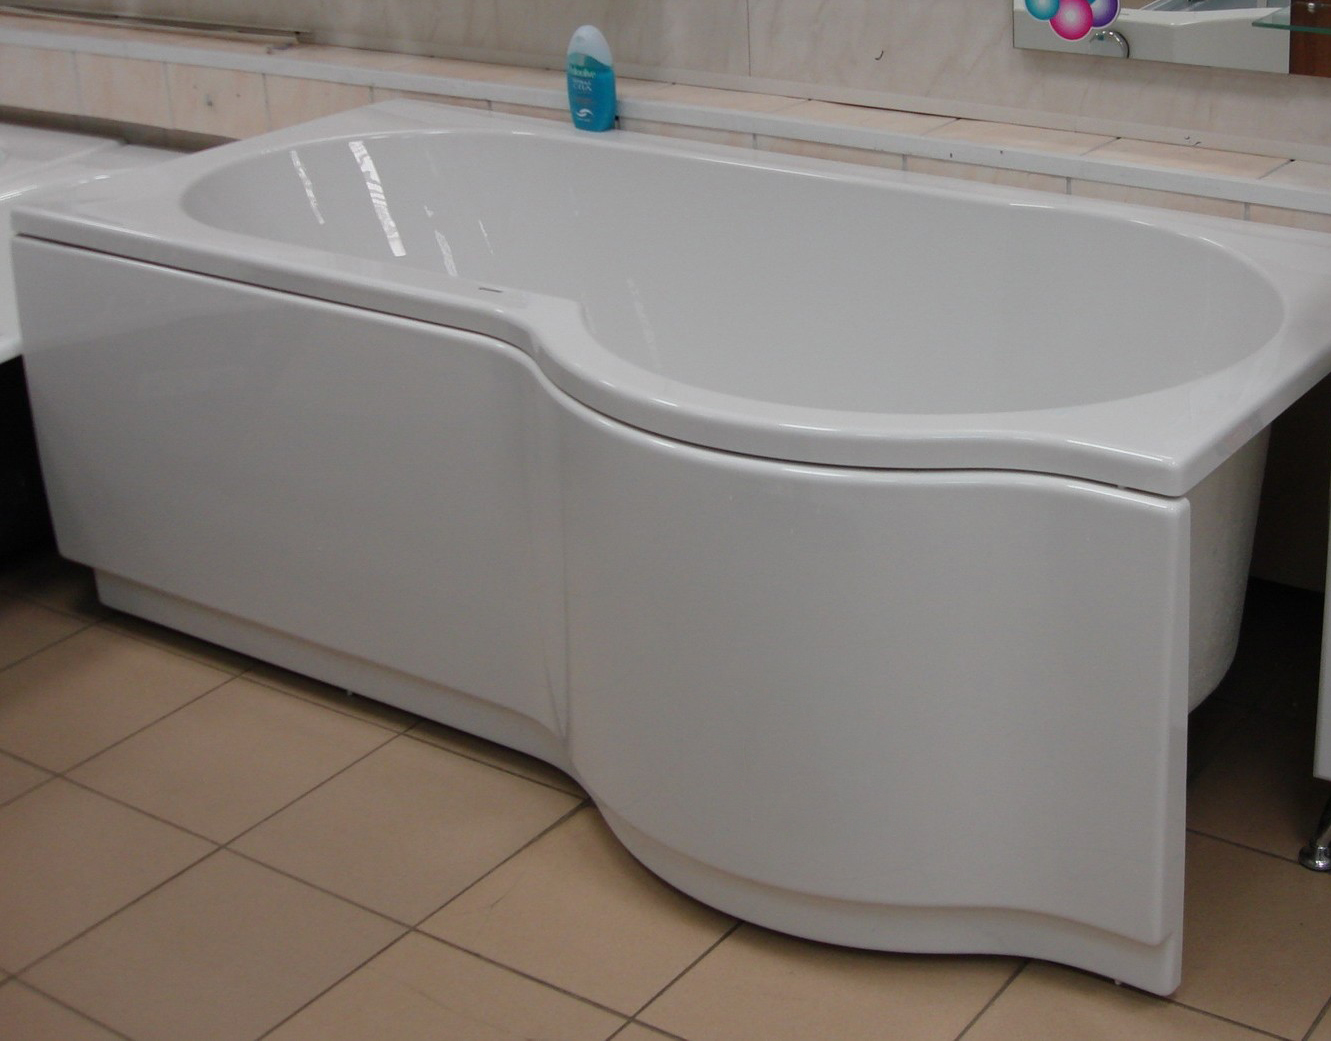 Акриловая ванна Riho Dorado 170х90 L